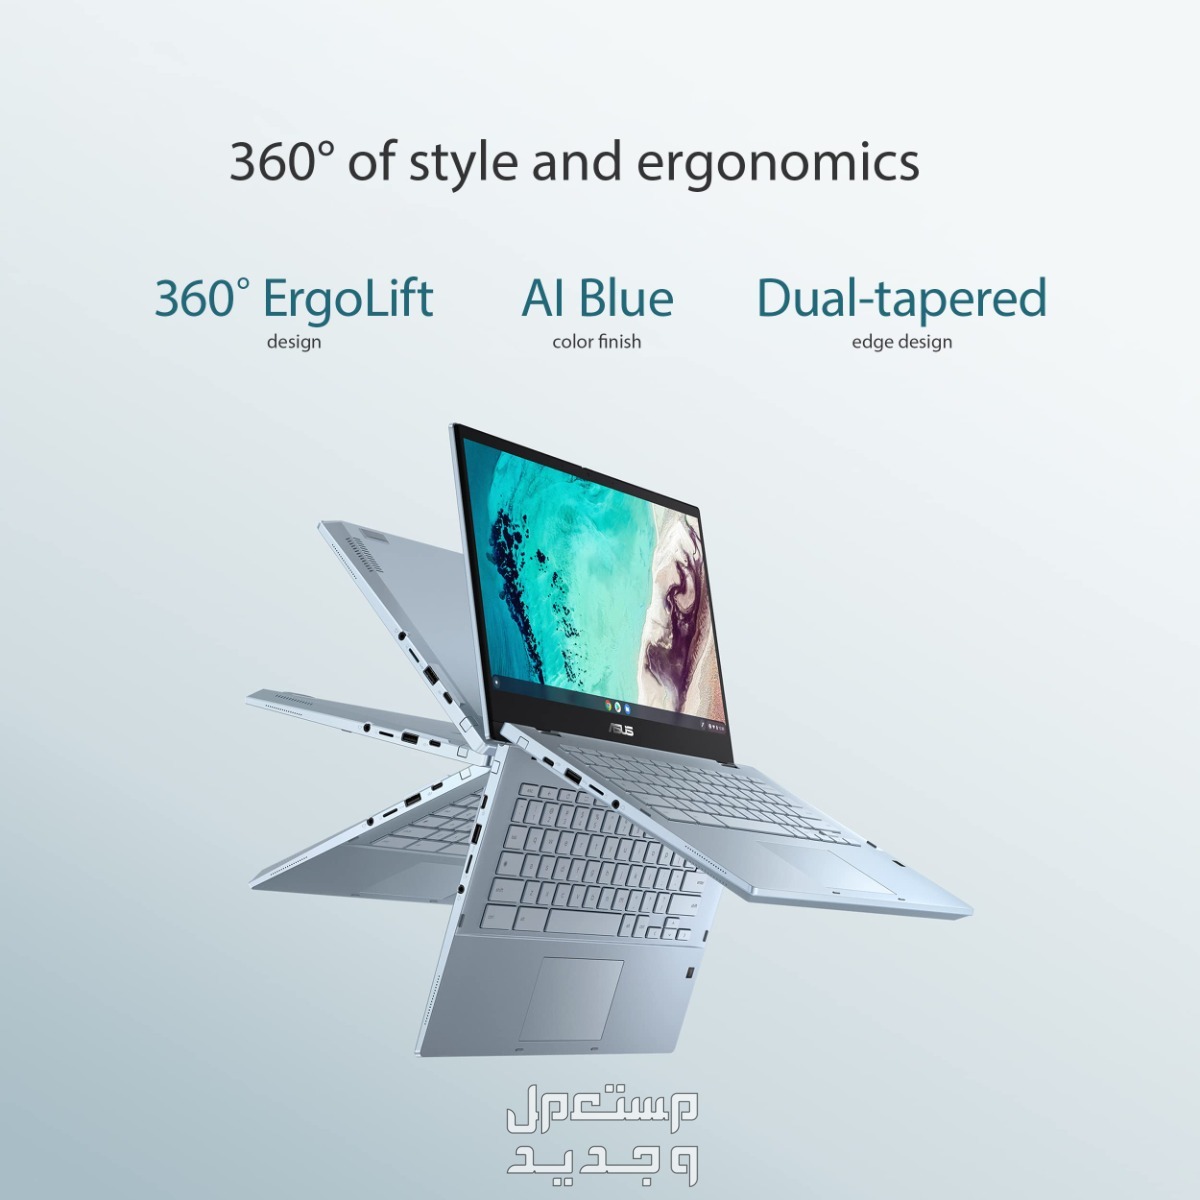 تعرف على أفضل لاب توب للبرمجة بسعر رخيص 2024 في الأردن Asus Chromebook Flip CX3